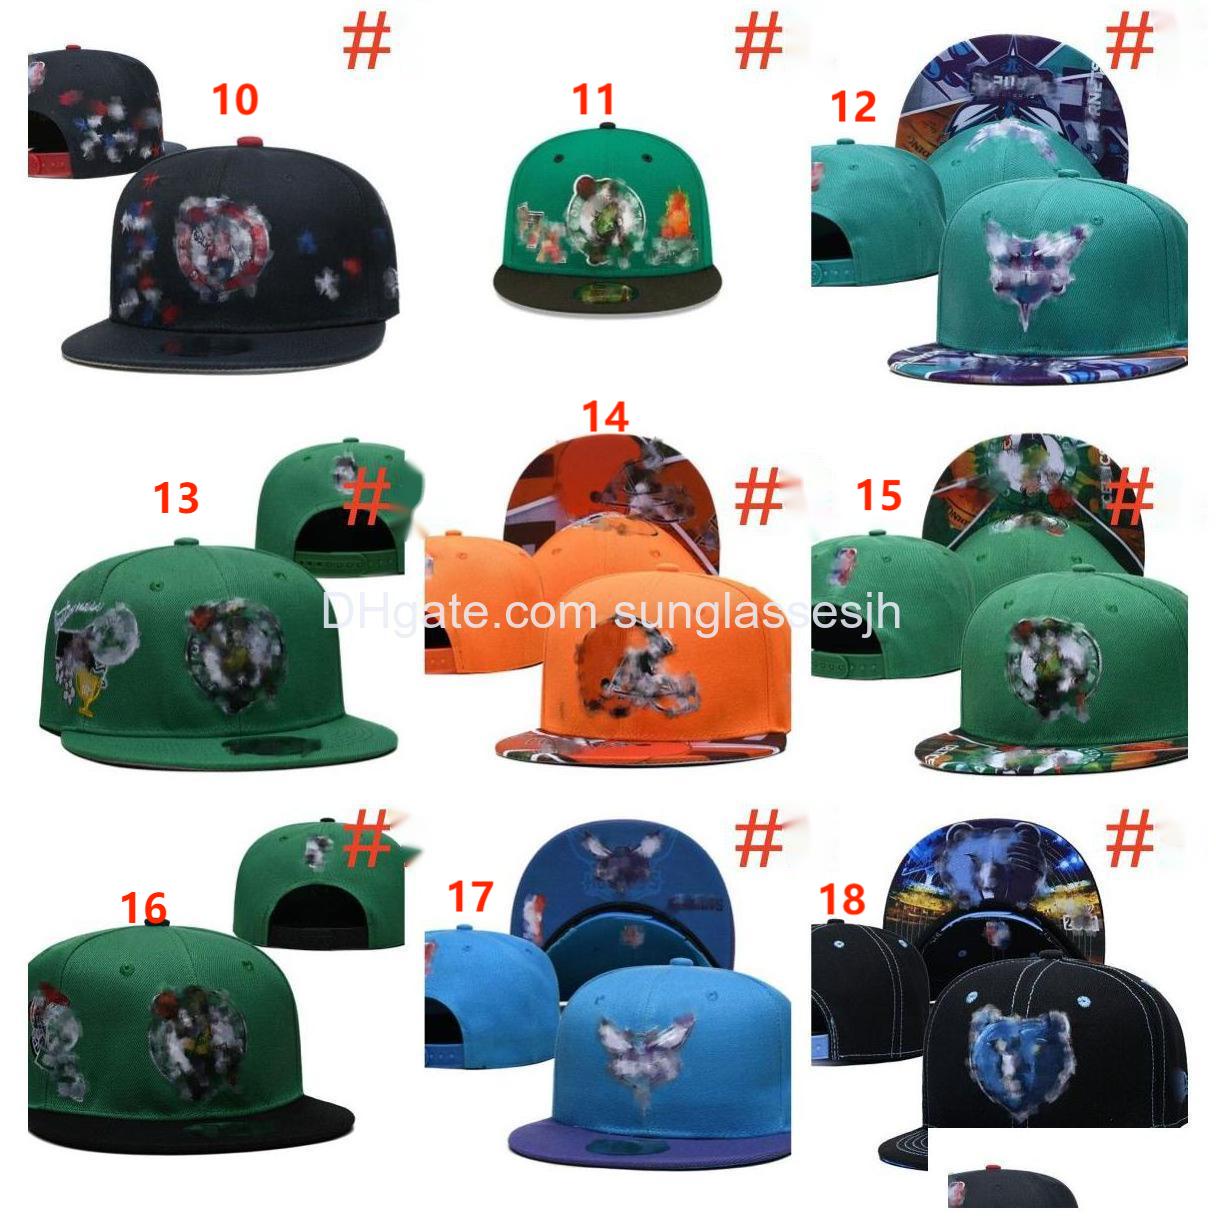 Бейсбольные кепки Snapback высшего качества Облегающие шляпы Вышивка Футбол Баскбольные козырьки Хлопковая сетка с буквами Гибкие шапочки Плоская шляпа Хип-хоп Spo